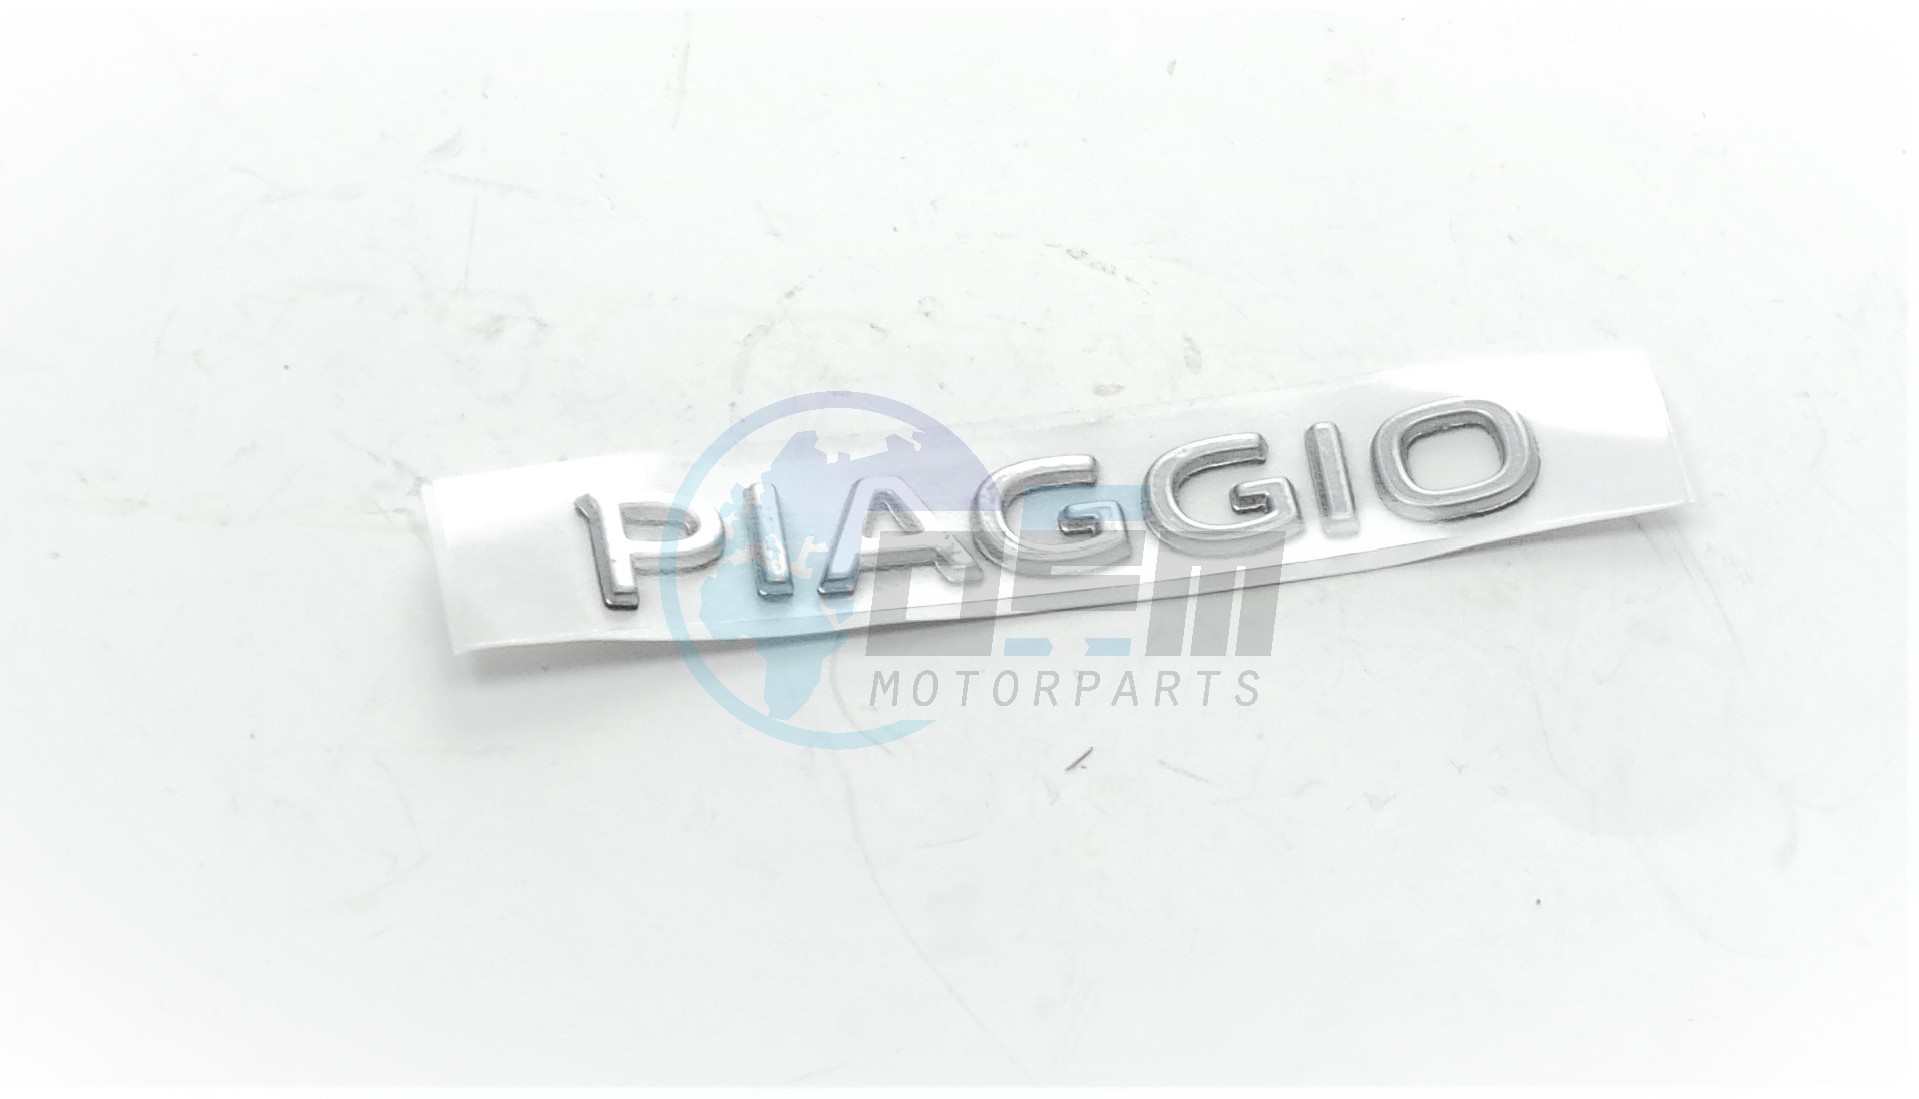 Product image: Piaggio - 2H002014 - PLAKETTE "PIAGGIO"  0